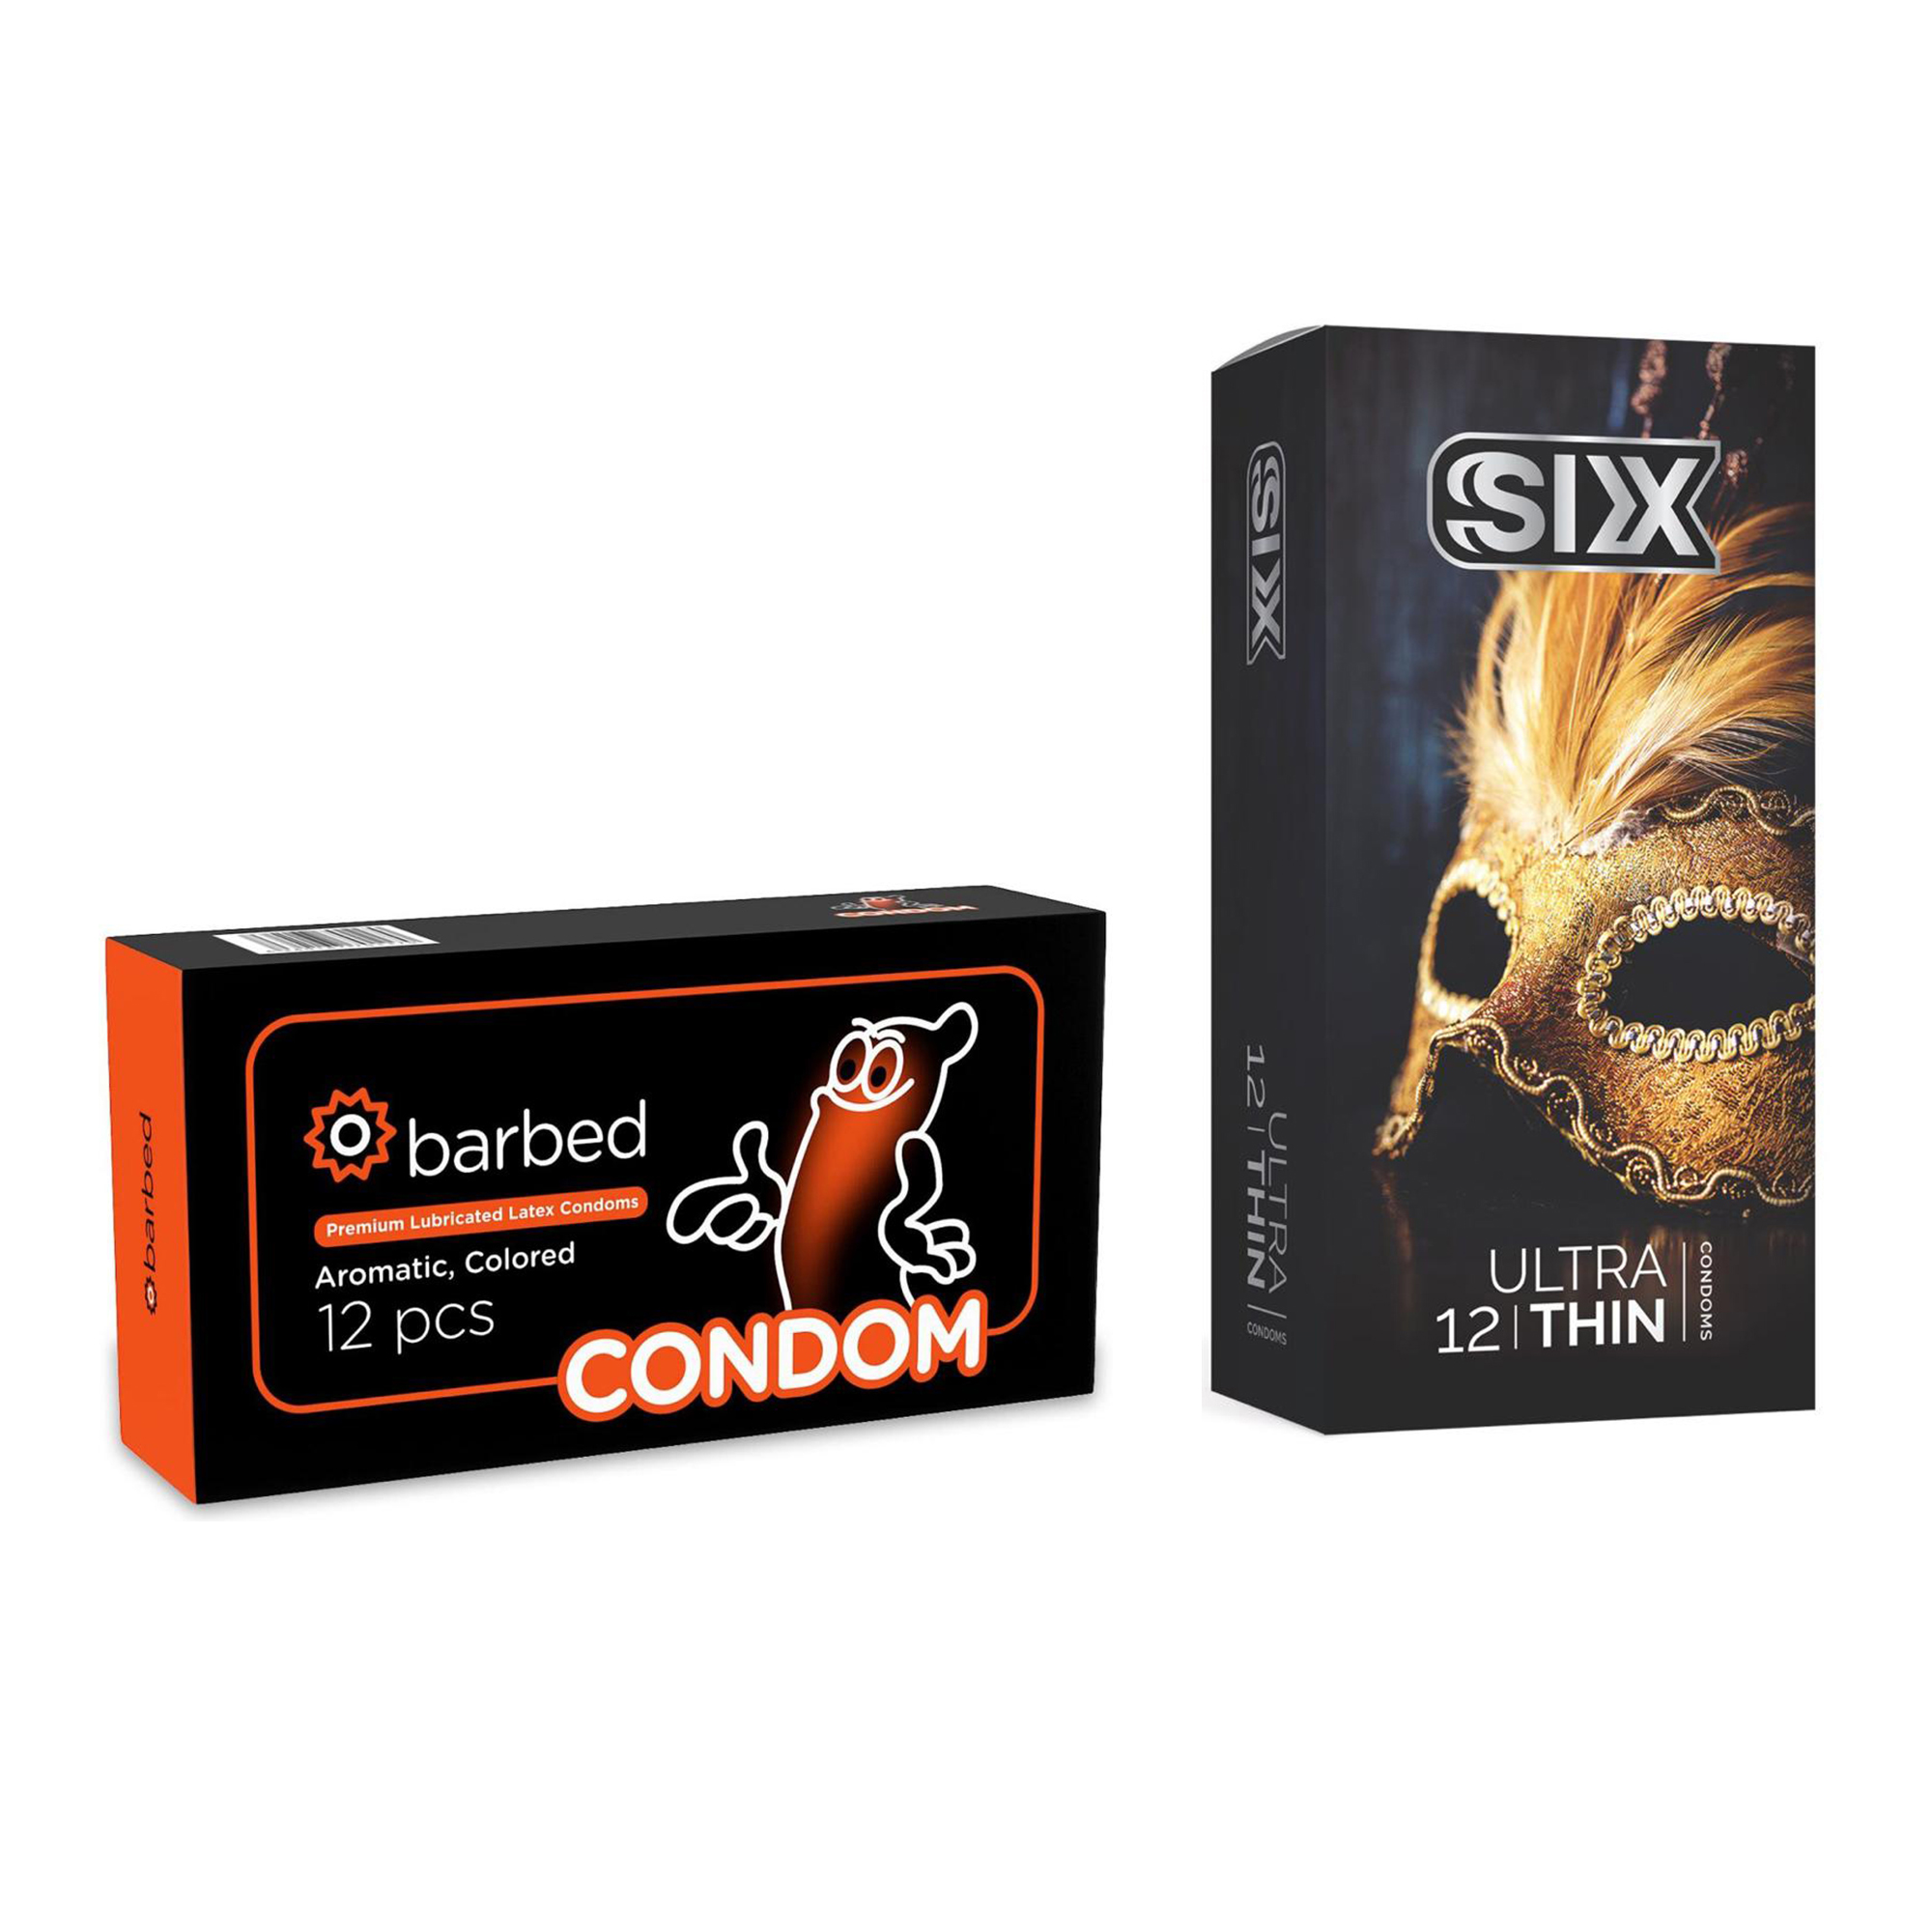 کاندوم سیکس مدل Ultra Thin بسته 12 عددی به همراه کاندوم کاندوم مدل Barbed بسته 12 عددی